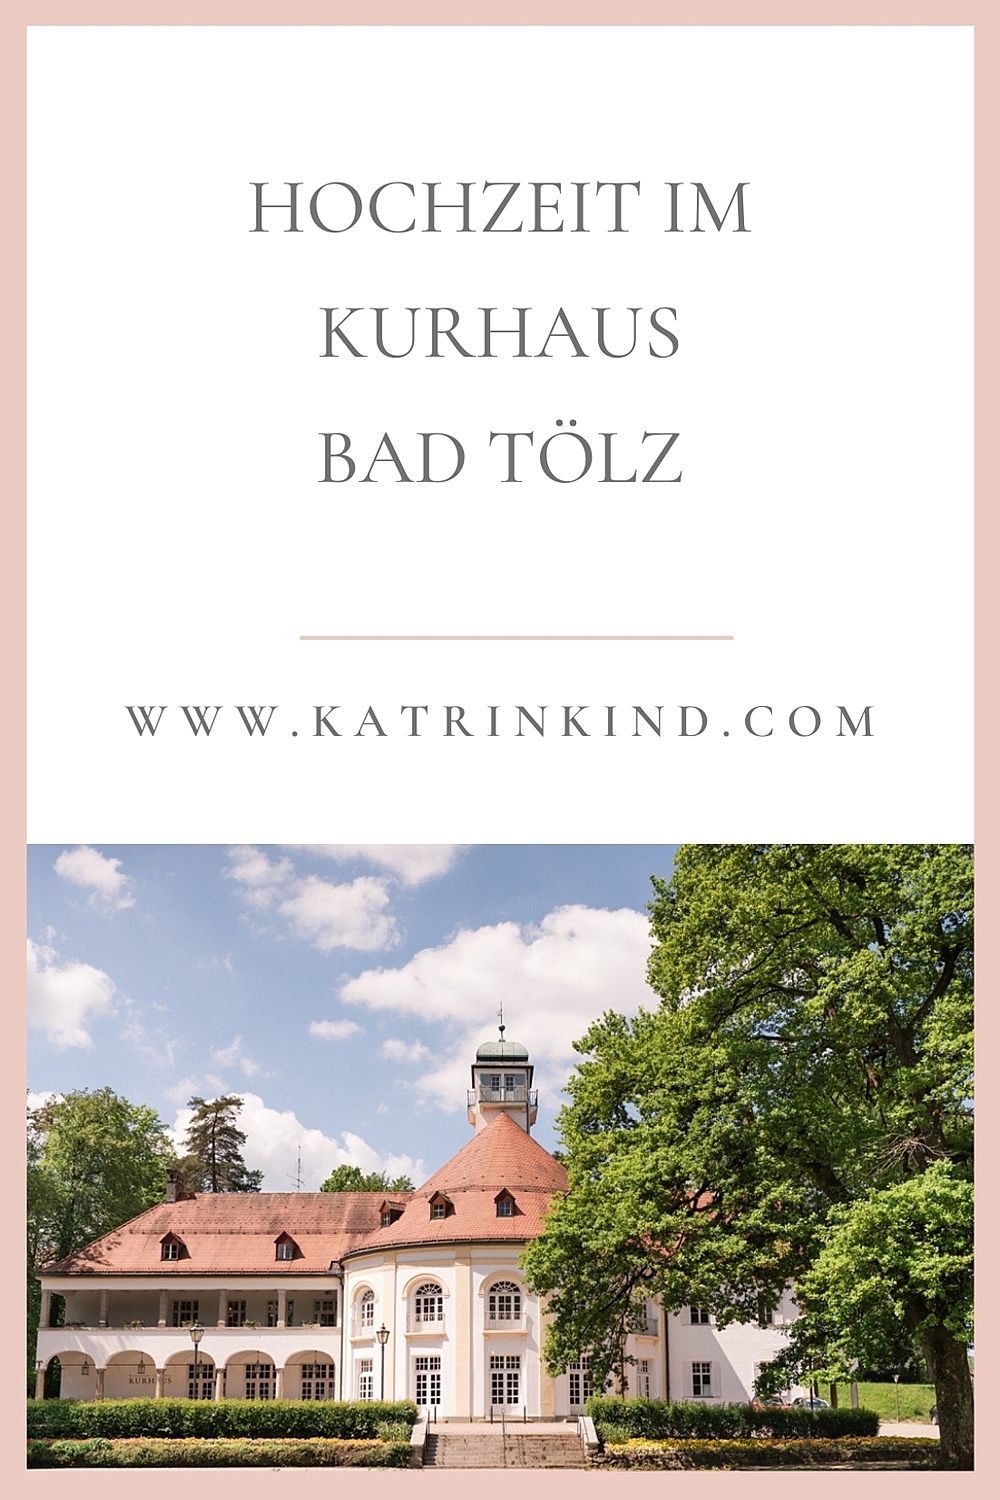 Kurhaus Bad Tölz Hochzeit